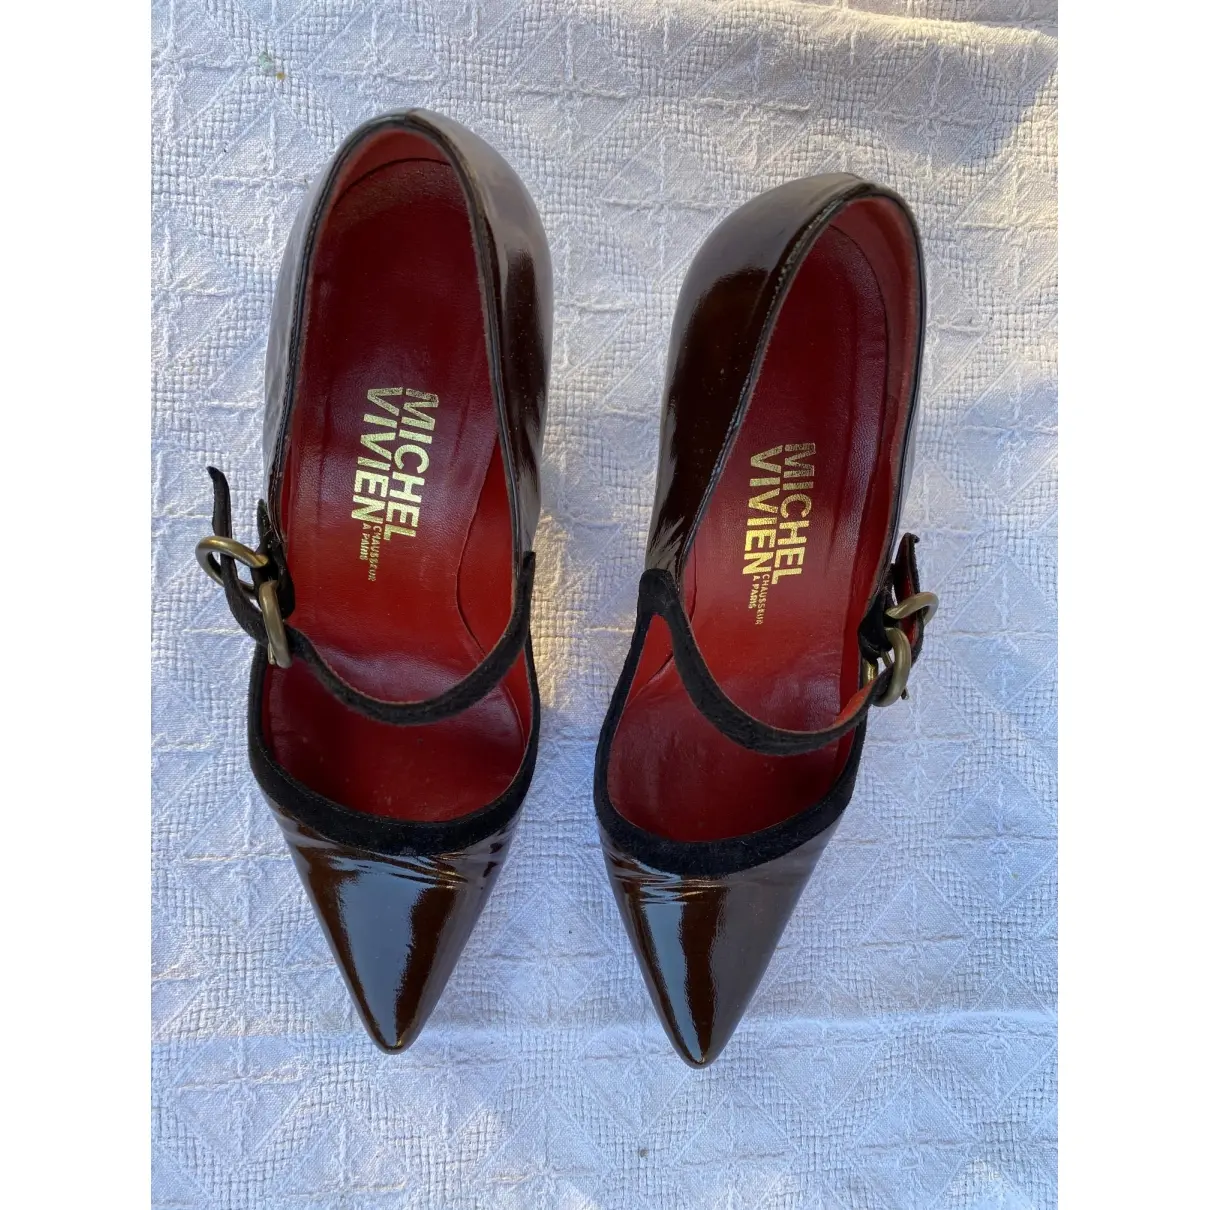 Michel Vivien Patent leather heels for sale